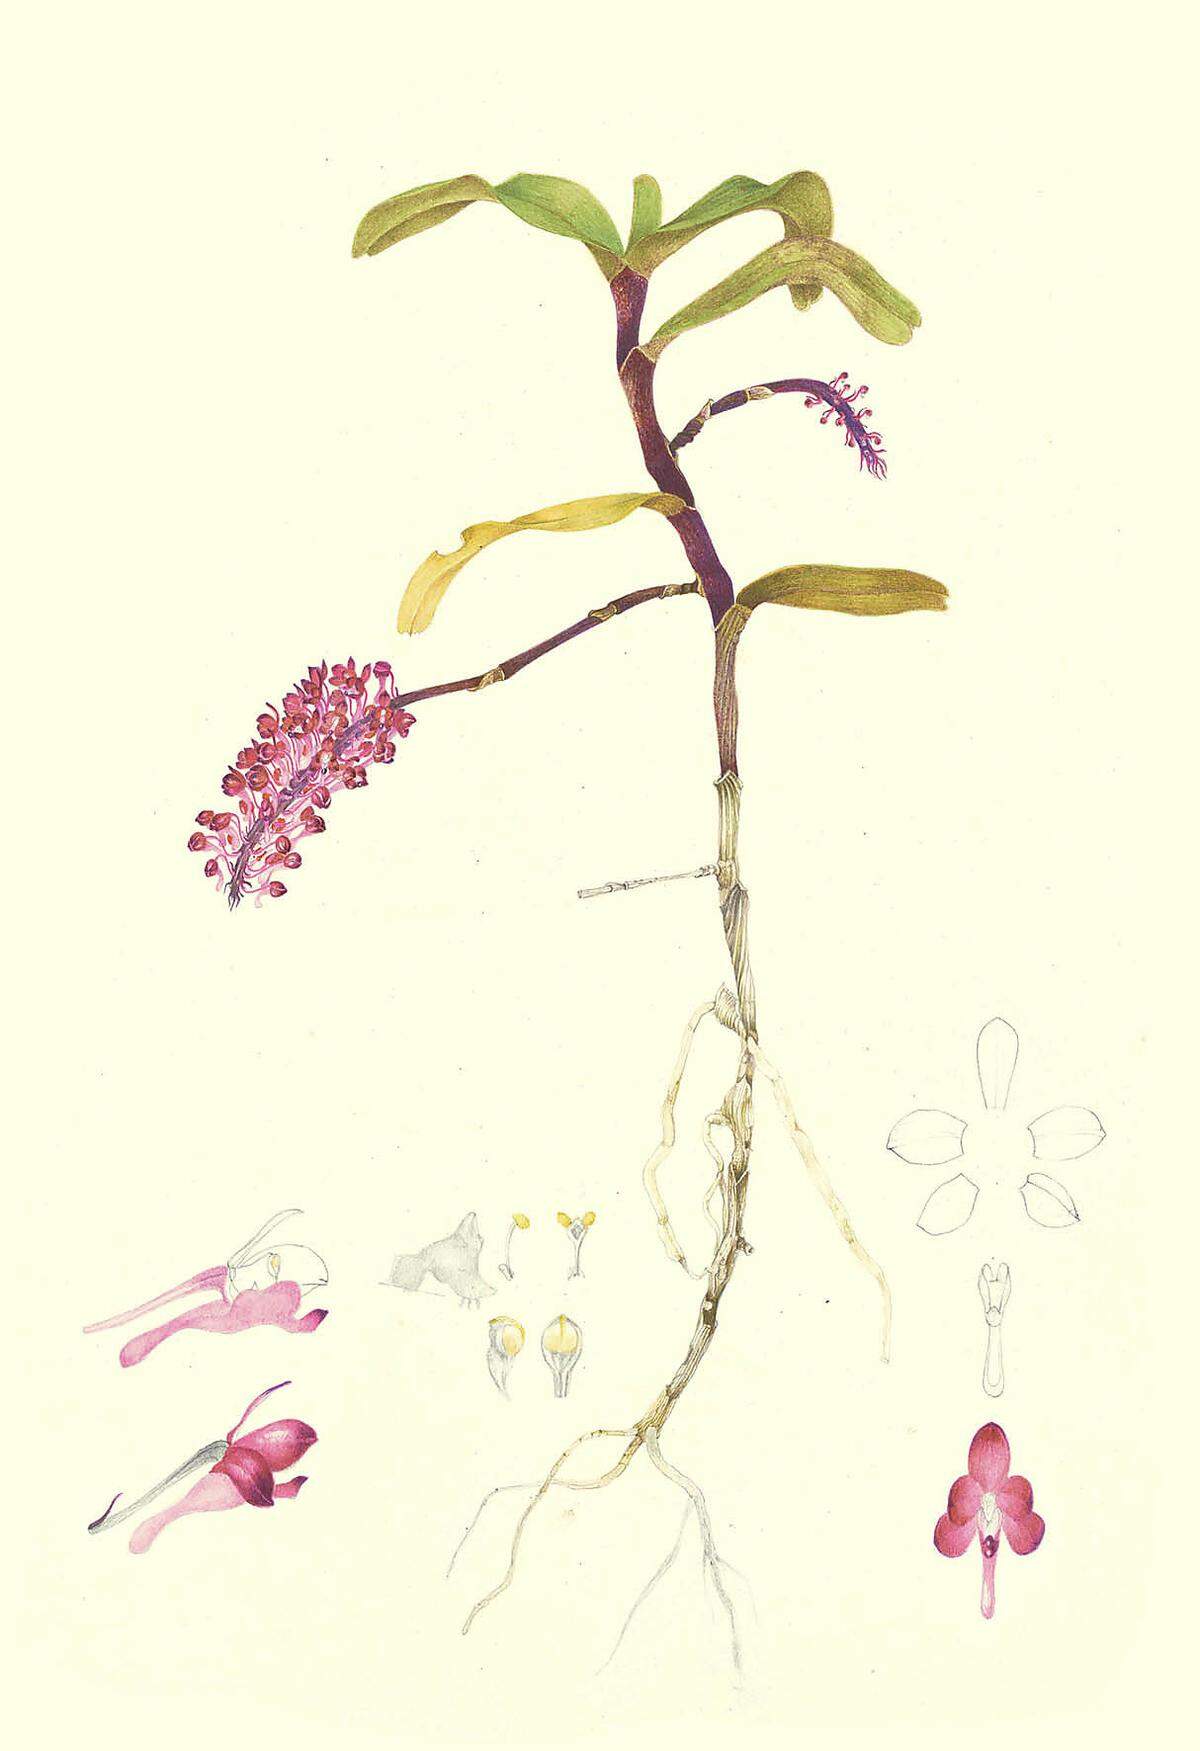 Jede Pflanze (hier Saccolabium mooreanum Rolfe) wird als Ganzheit dargestellt: Blüten, Blätter, Stängel und auch die Wurzeln.    